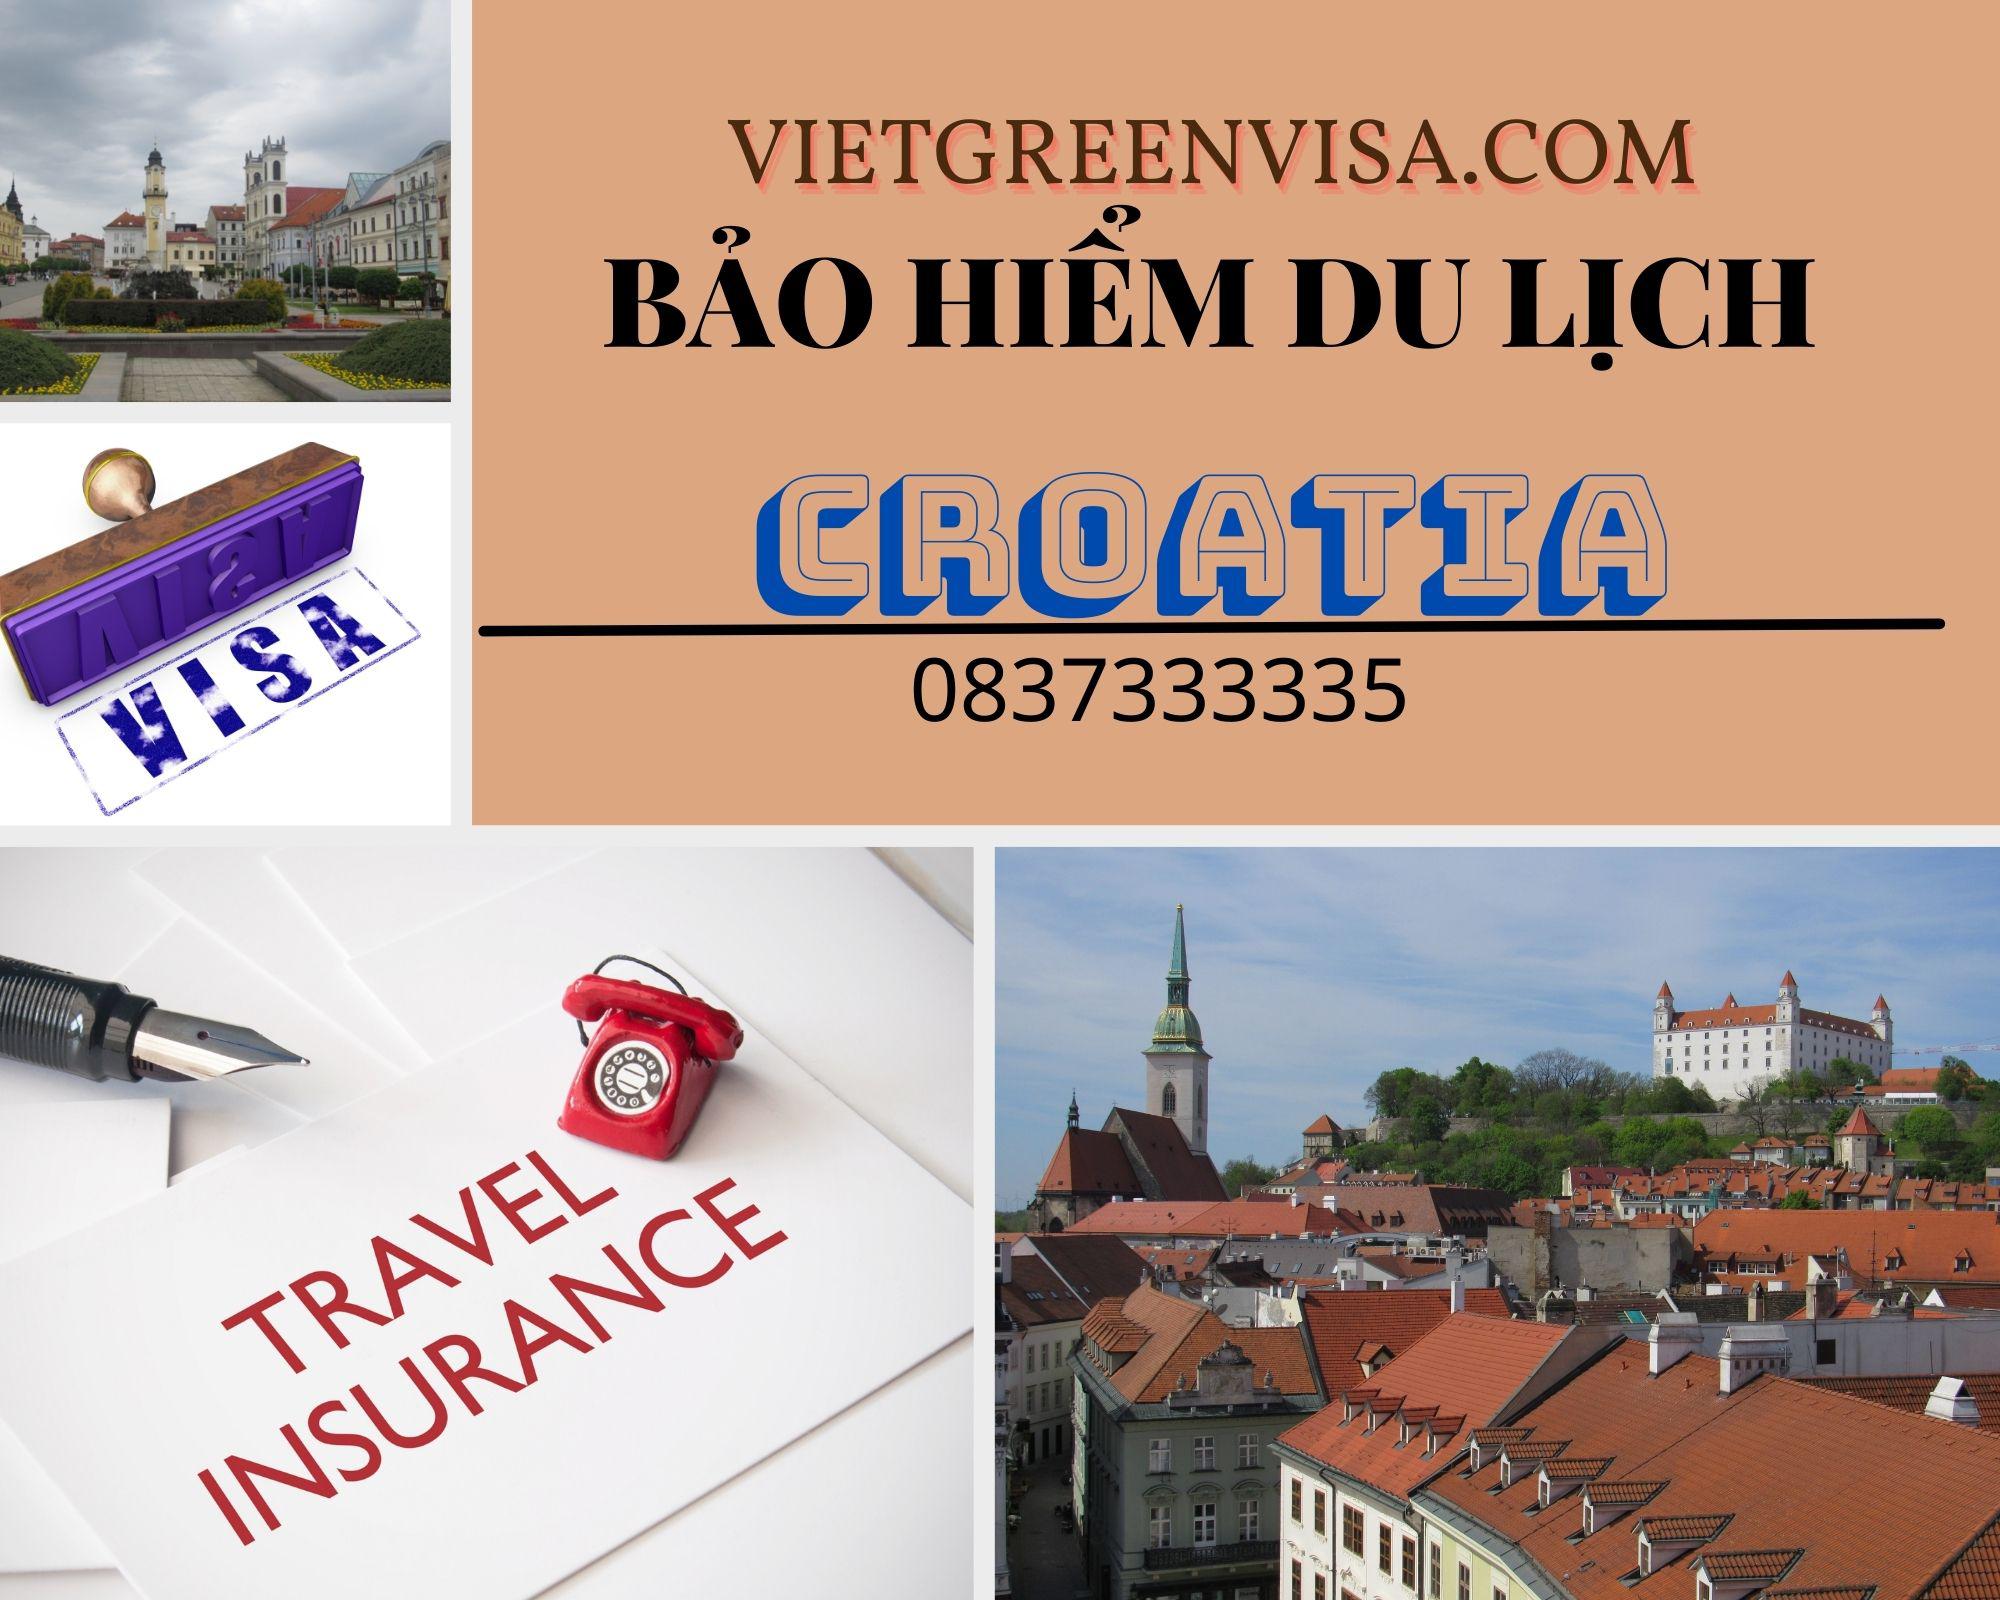 Dịch vụ  làm bảo hiểm du lịch đi Croatia giá rẻ